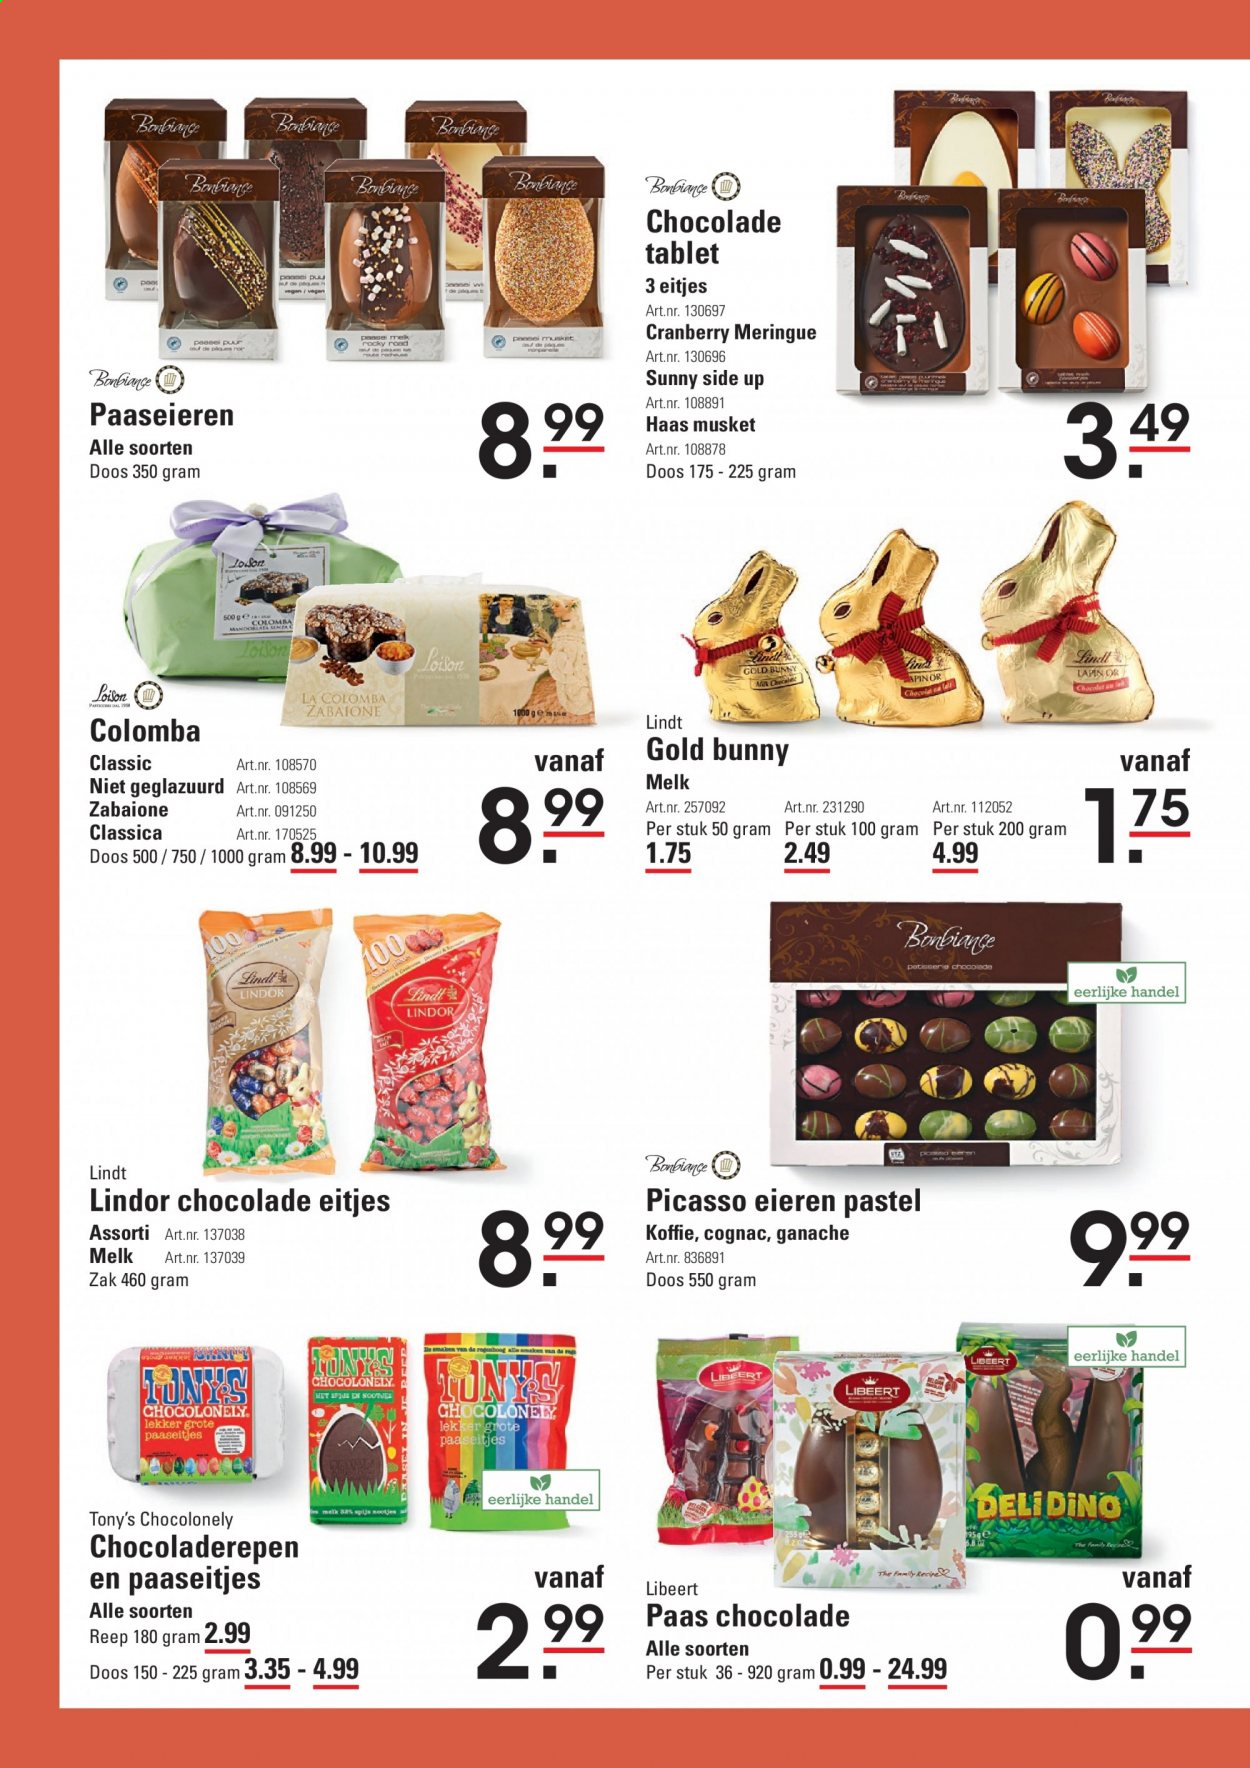 thumbnail - Sligro-aanbieding - 18-2-2021 - 8-3-2021 -  producten in de aanbieding - meringue, melk, chocolade, cranberry’s, koffie, cognac. Pagina 22.